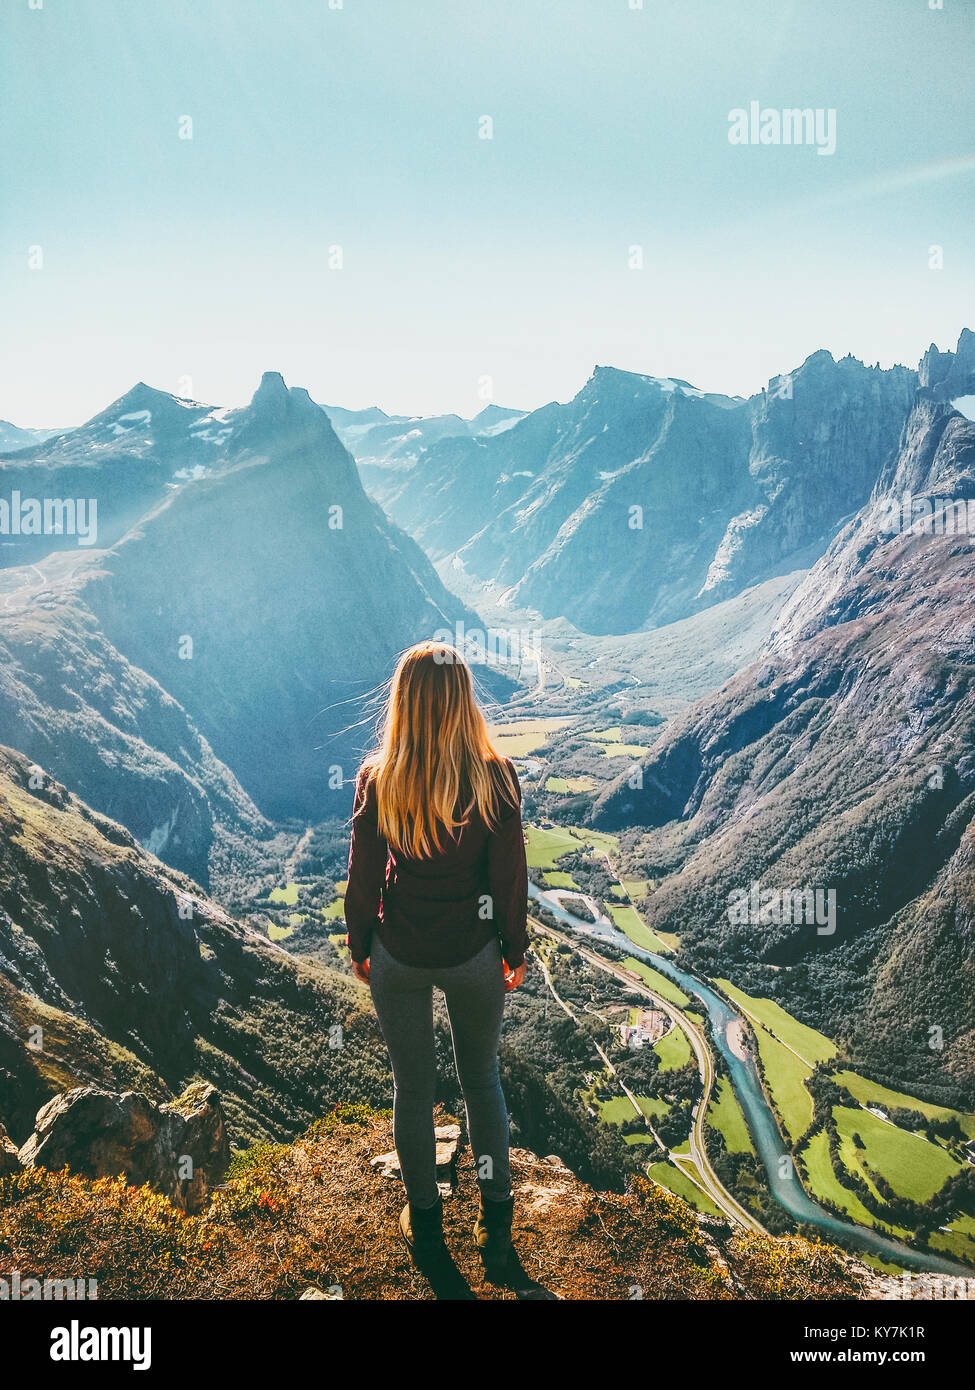 Femme en Norvège Voyage montagnes healthy lifestyle concept active week-end Vacances d'apprécier vue aérienne du paysage Banque D'Images